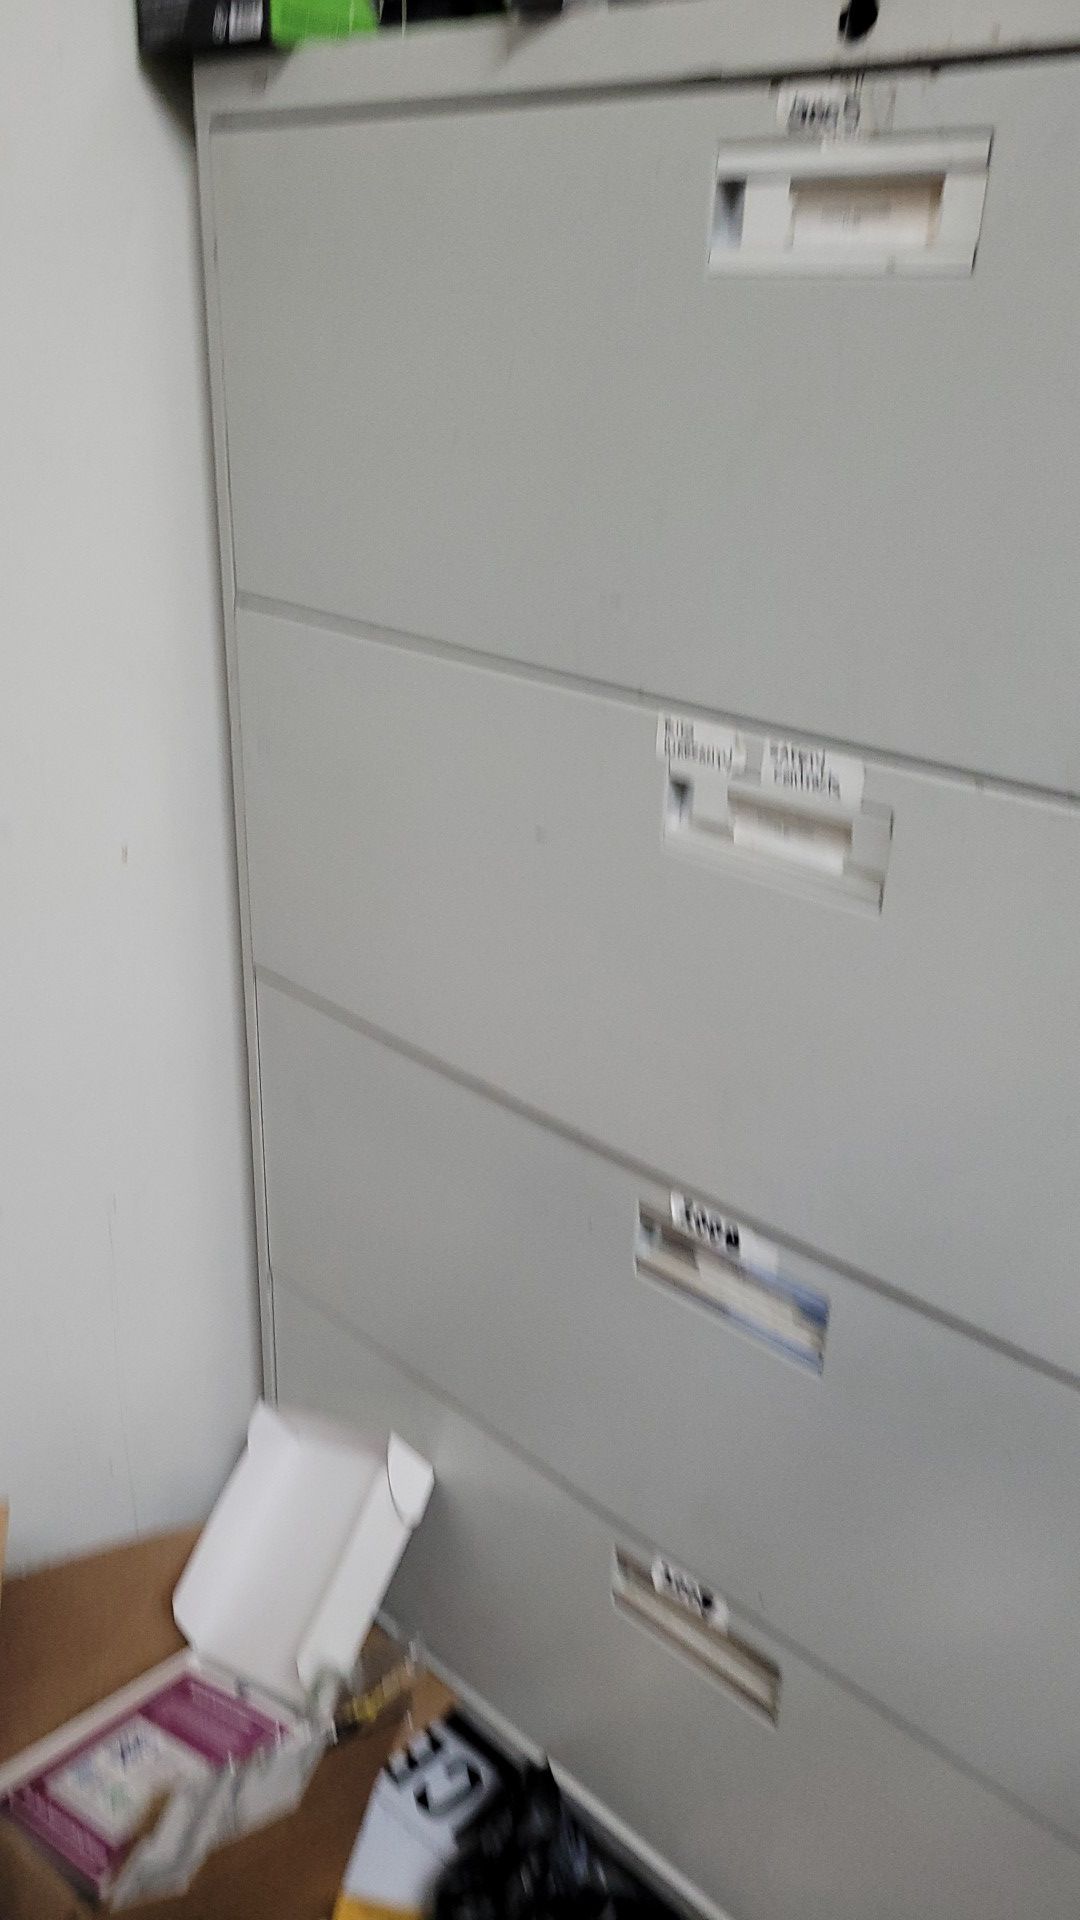 Metel filing cabinet